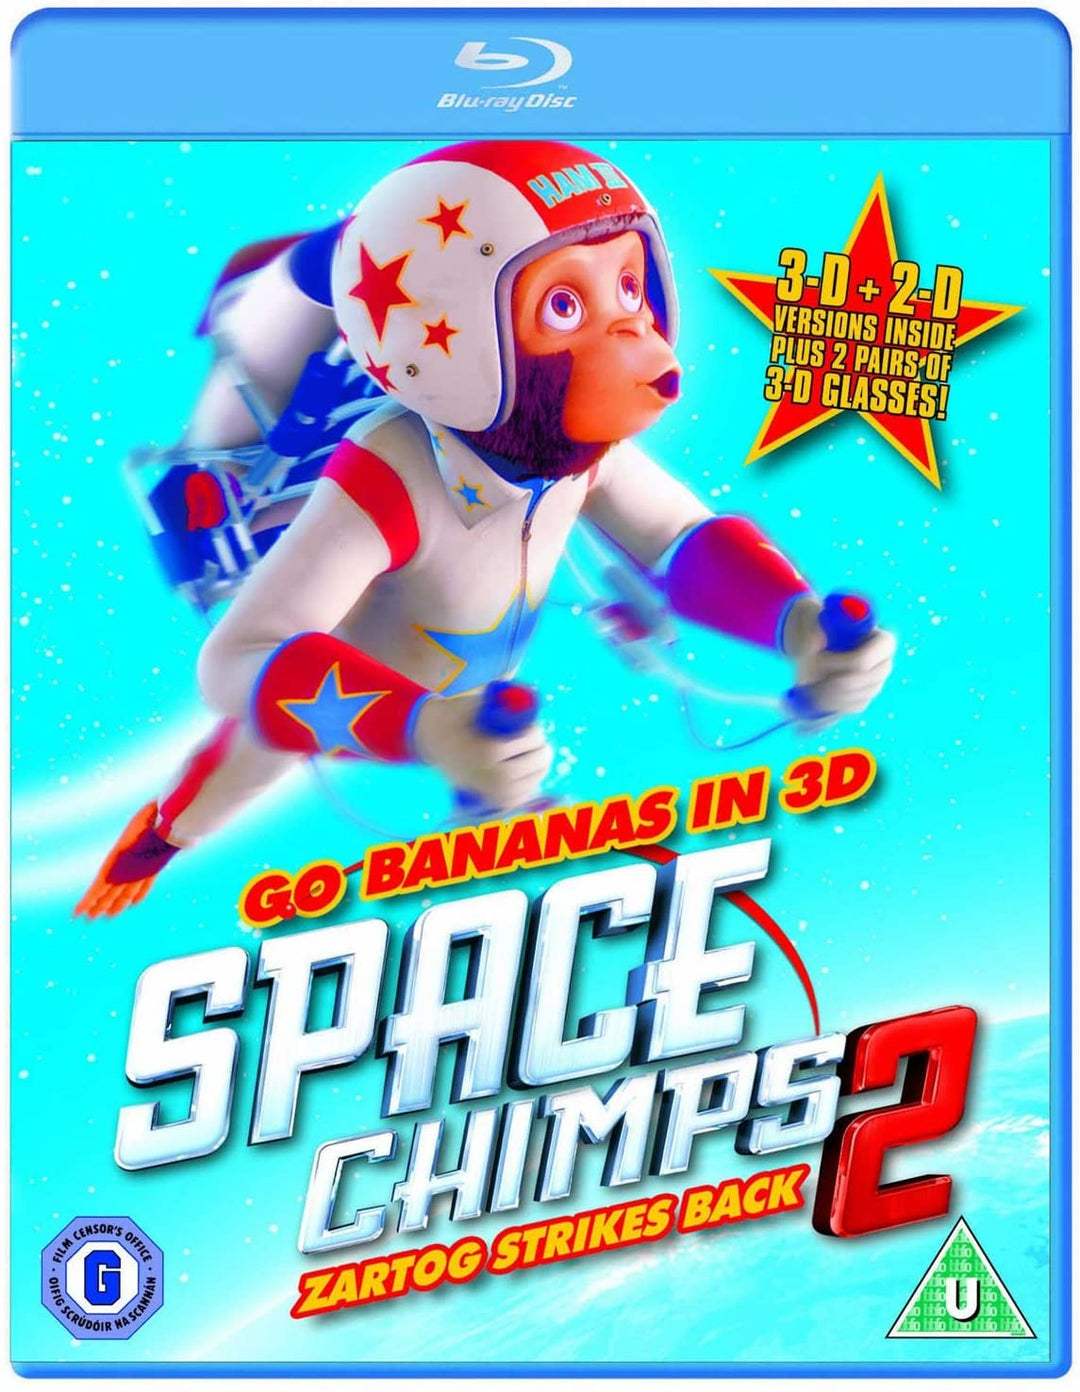 Space Chimps 2 - Zartog contre-attaque [Blu-ray]